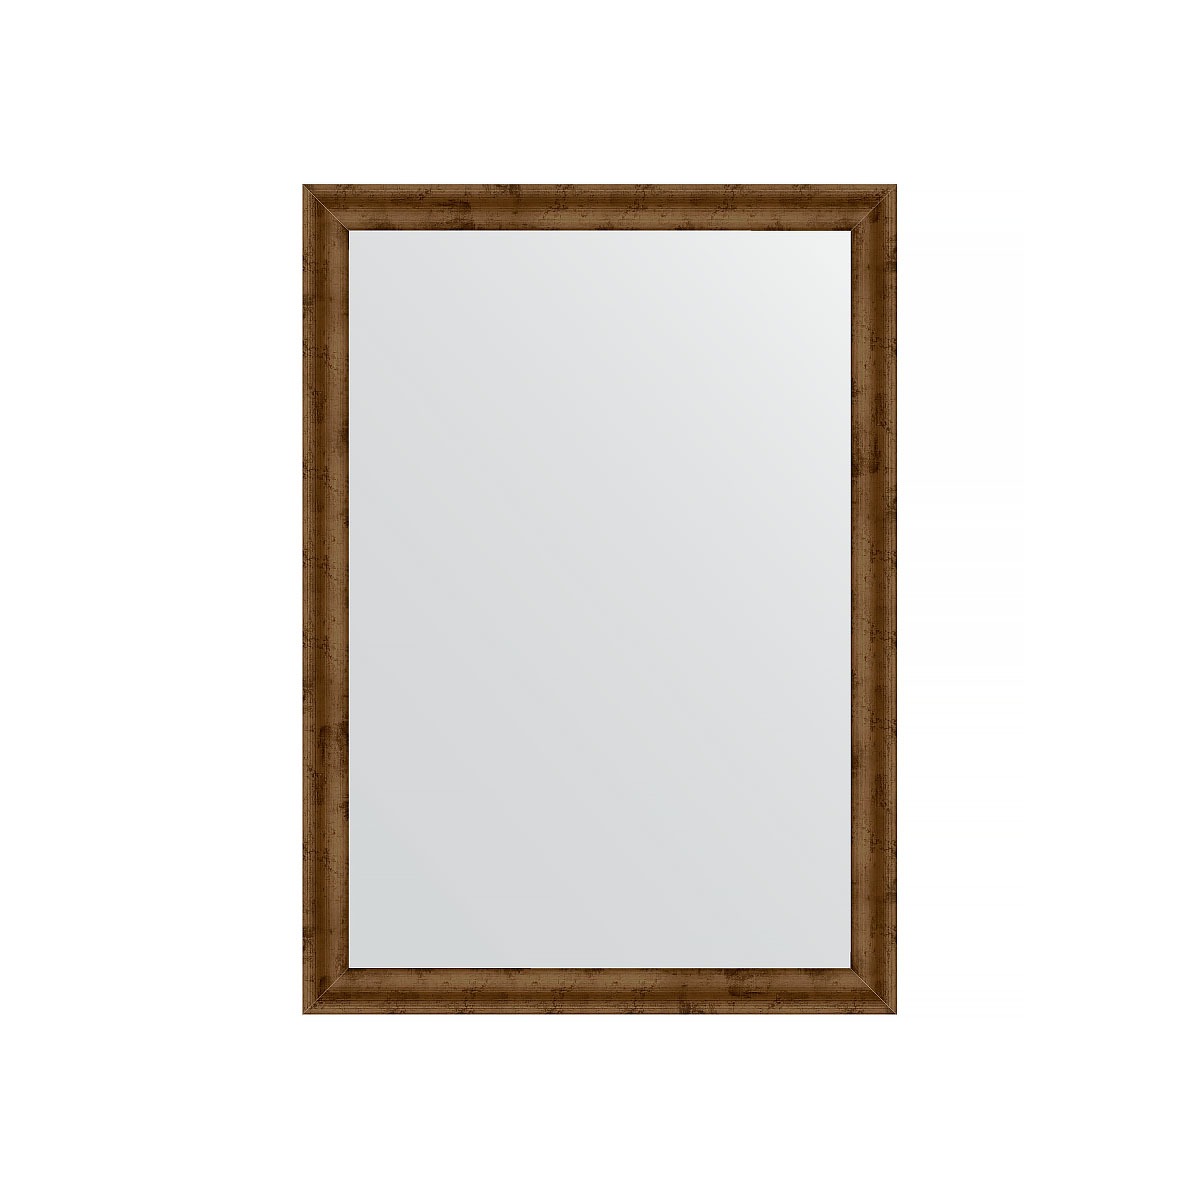 Зеркало в багетной раме Evoform красная бронза 37 мм 50х70 см зеркало шкаф emmy милли 50х70 универсальный белый mel50unbel